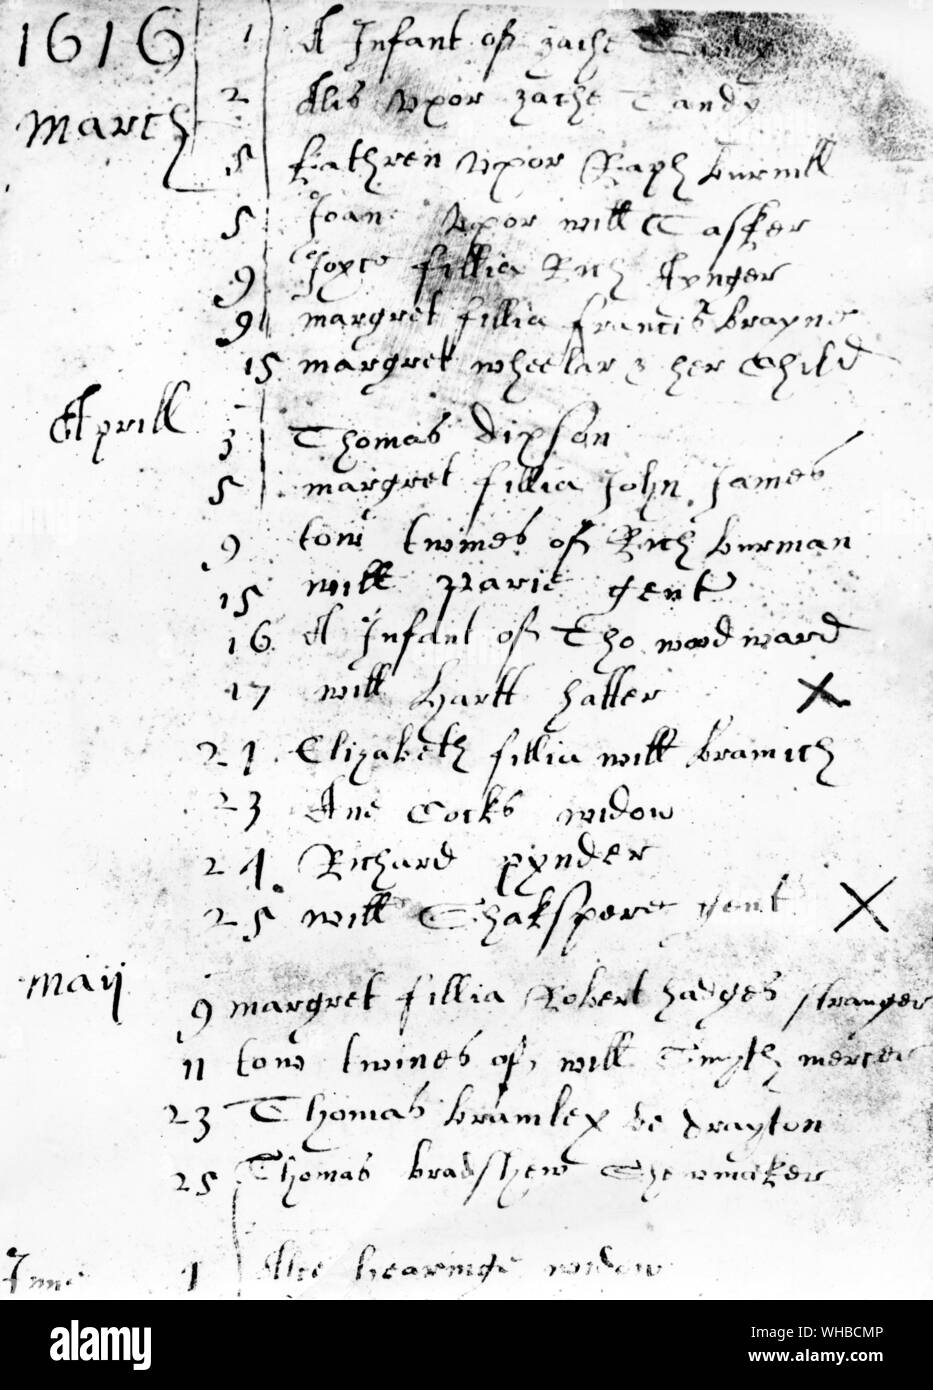 Entrée dans la ville de Stratford-upon-Avon registre paroissial de l'enterrement de William Shakespeare. 16 avril 1616 Banque D'Images